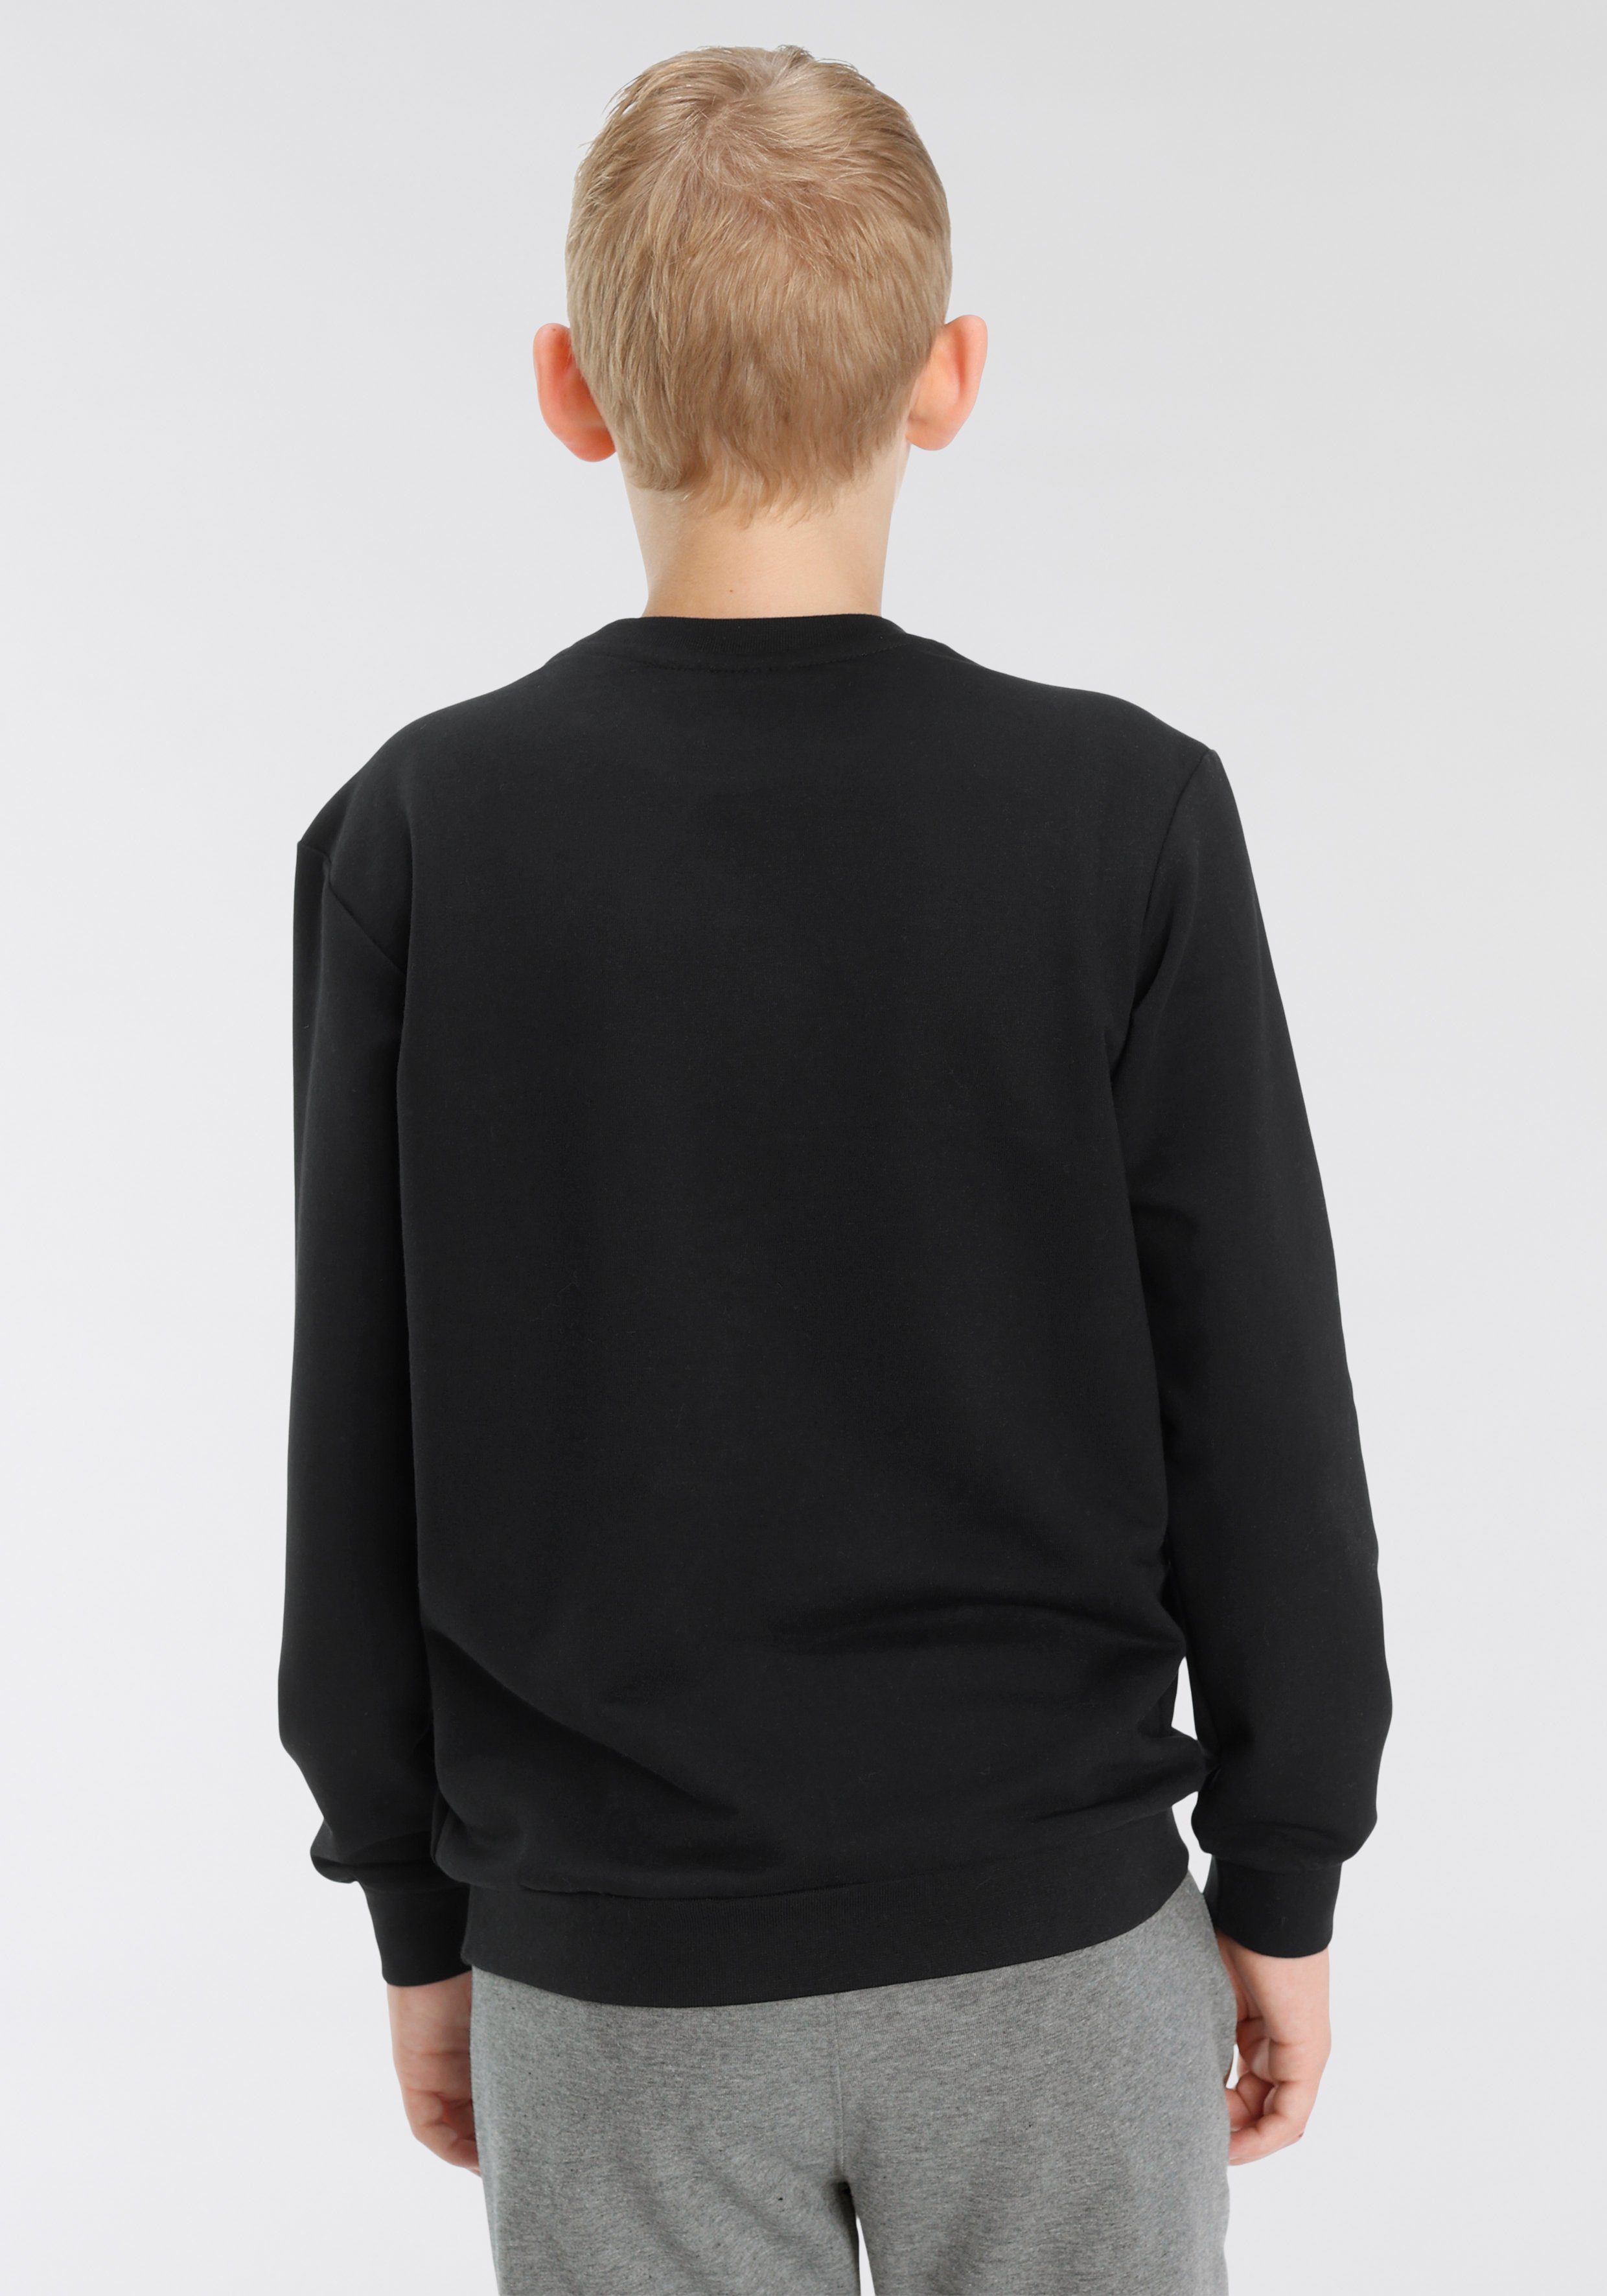 SWEATSHIRT Kinder - hummel schwarz Sweatshirt für DOS